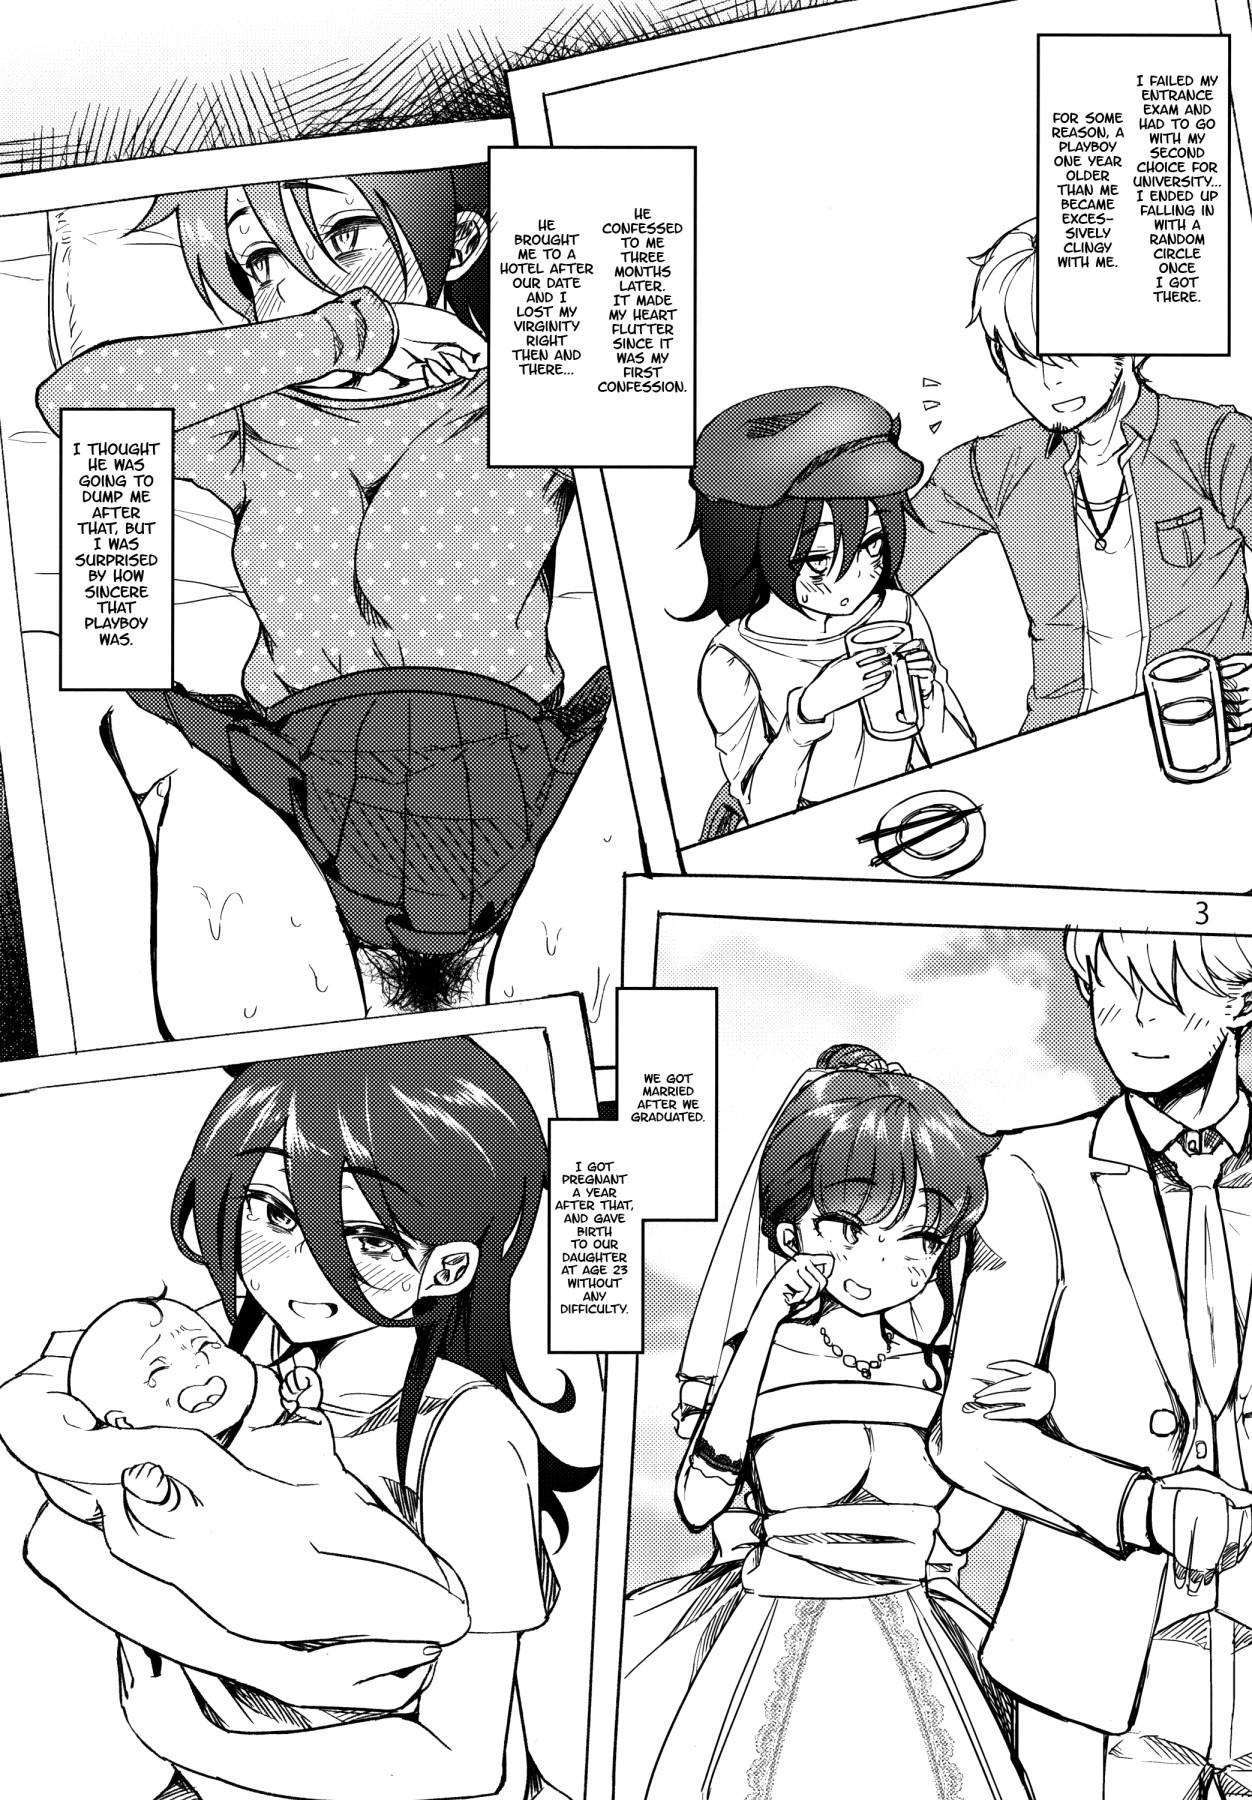 Hentai Manga Comic-The Housewife Who Fell To Tomoko's Futa Dick-Read-2